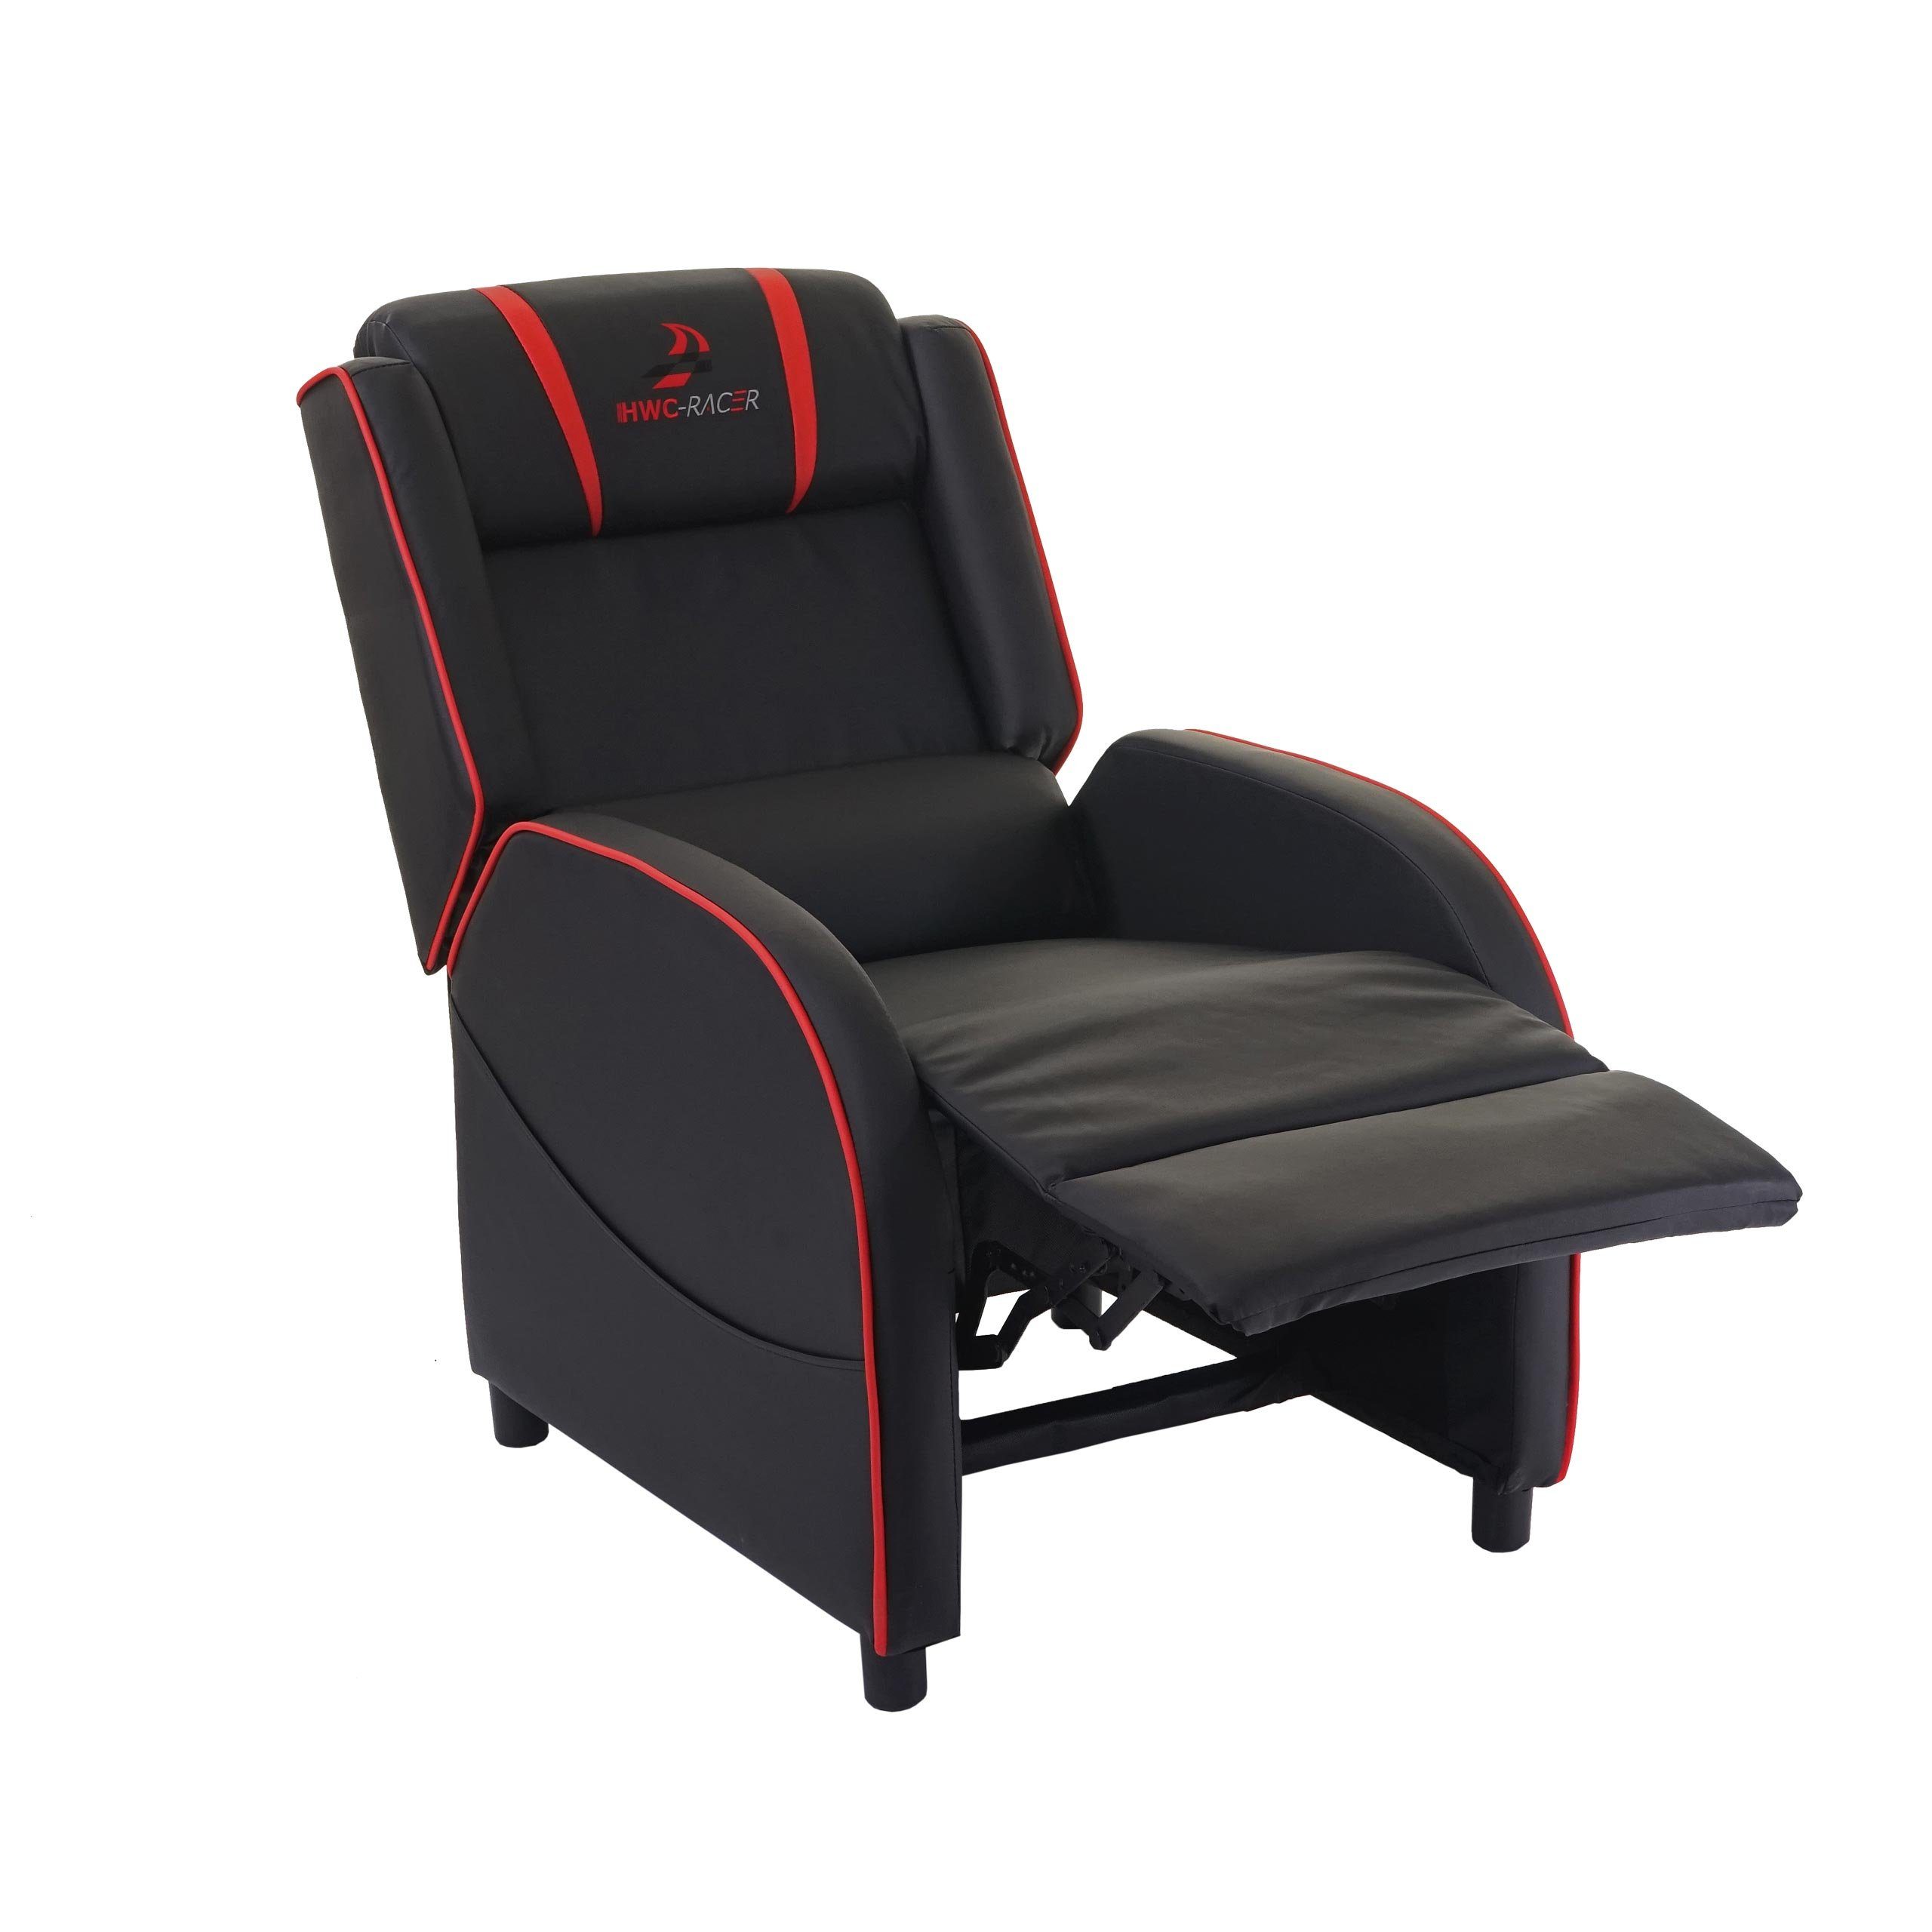 MCW Relaxsessel MCW-D68, Synchrone oder Taschen schwarz-rot Liegeposition inkl. Sitz- möglich, Verstellung